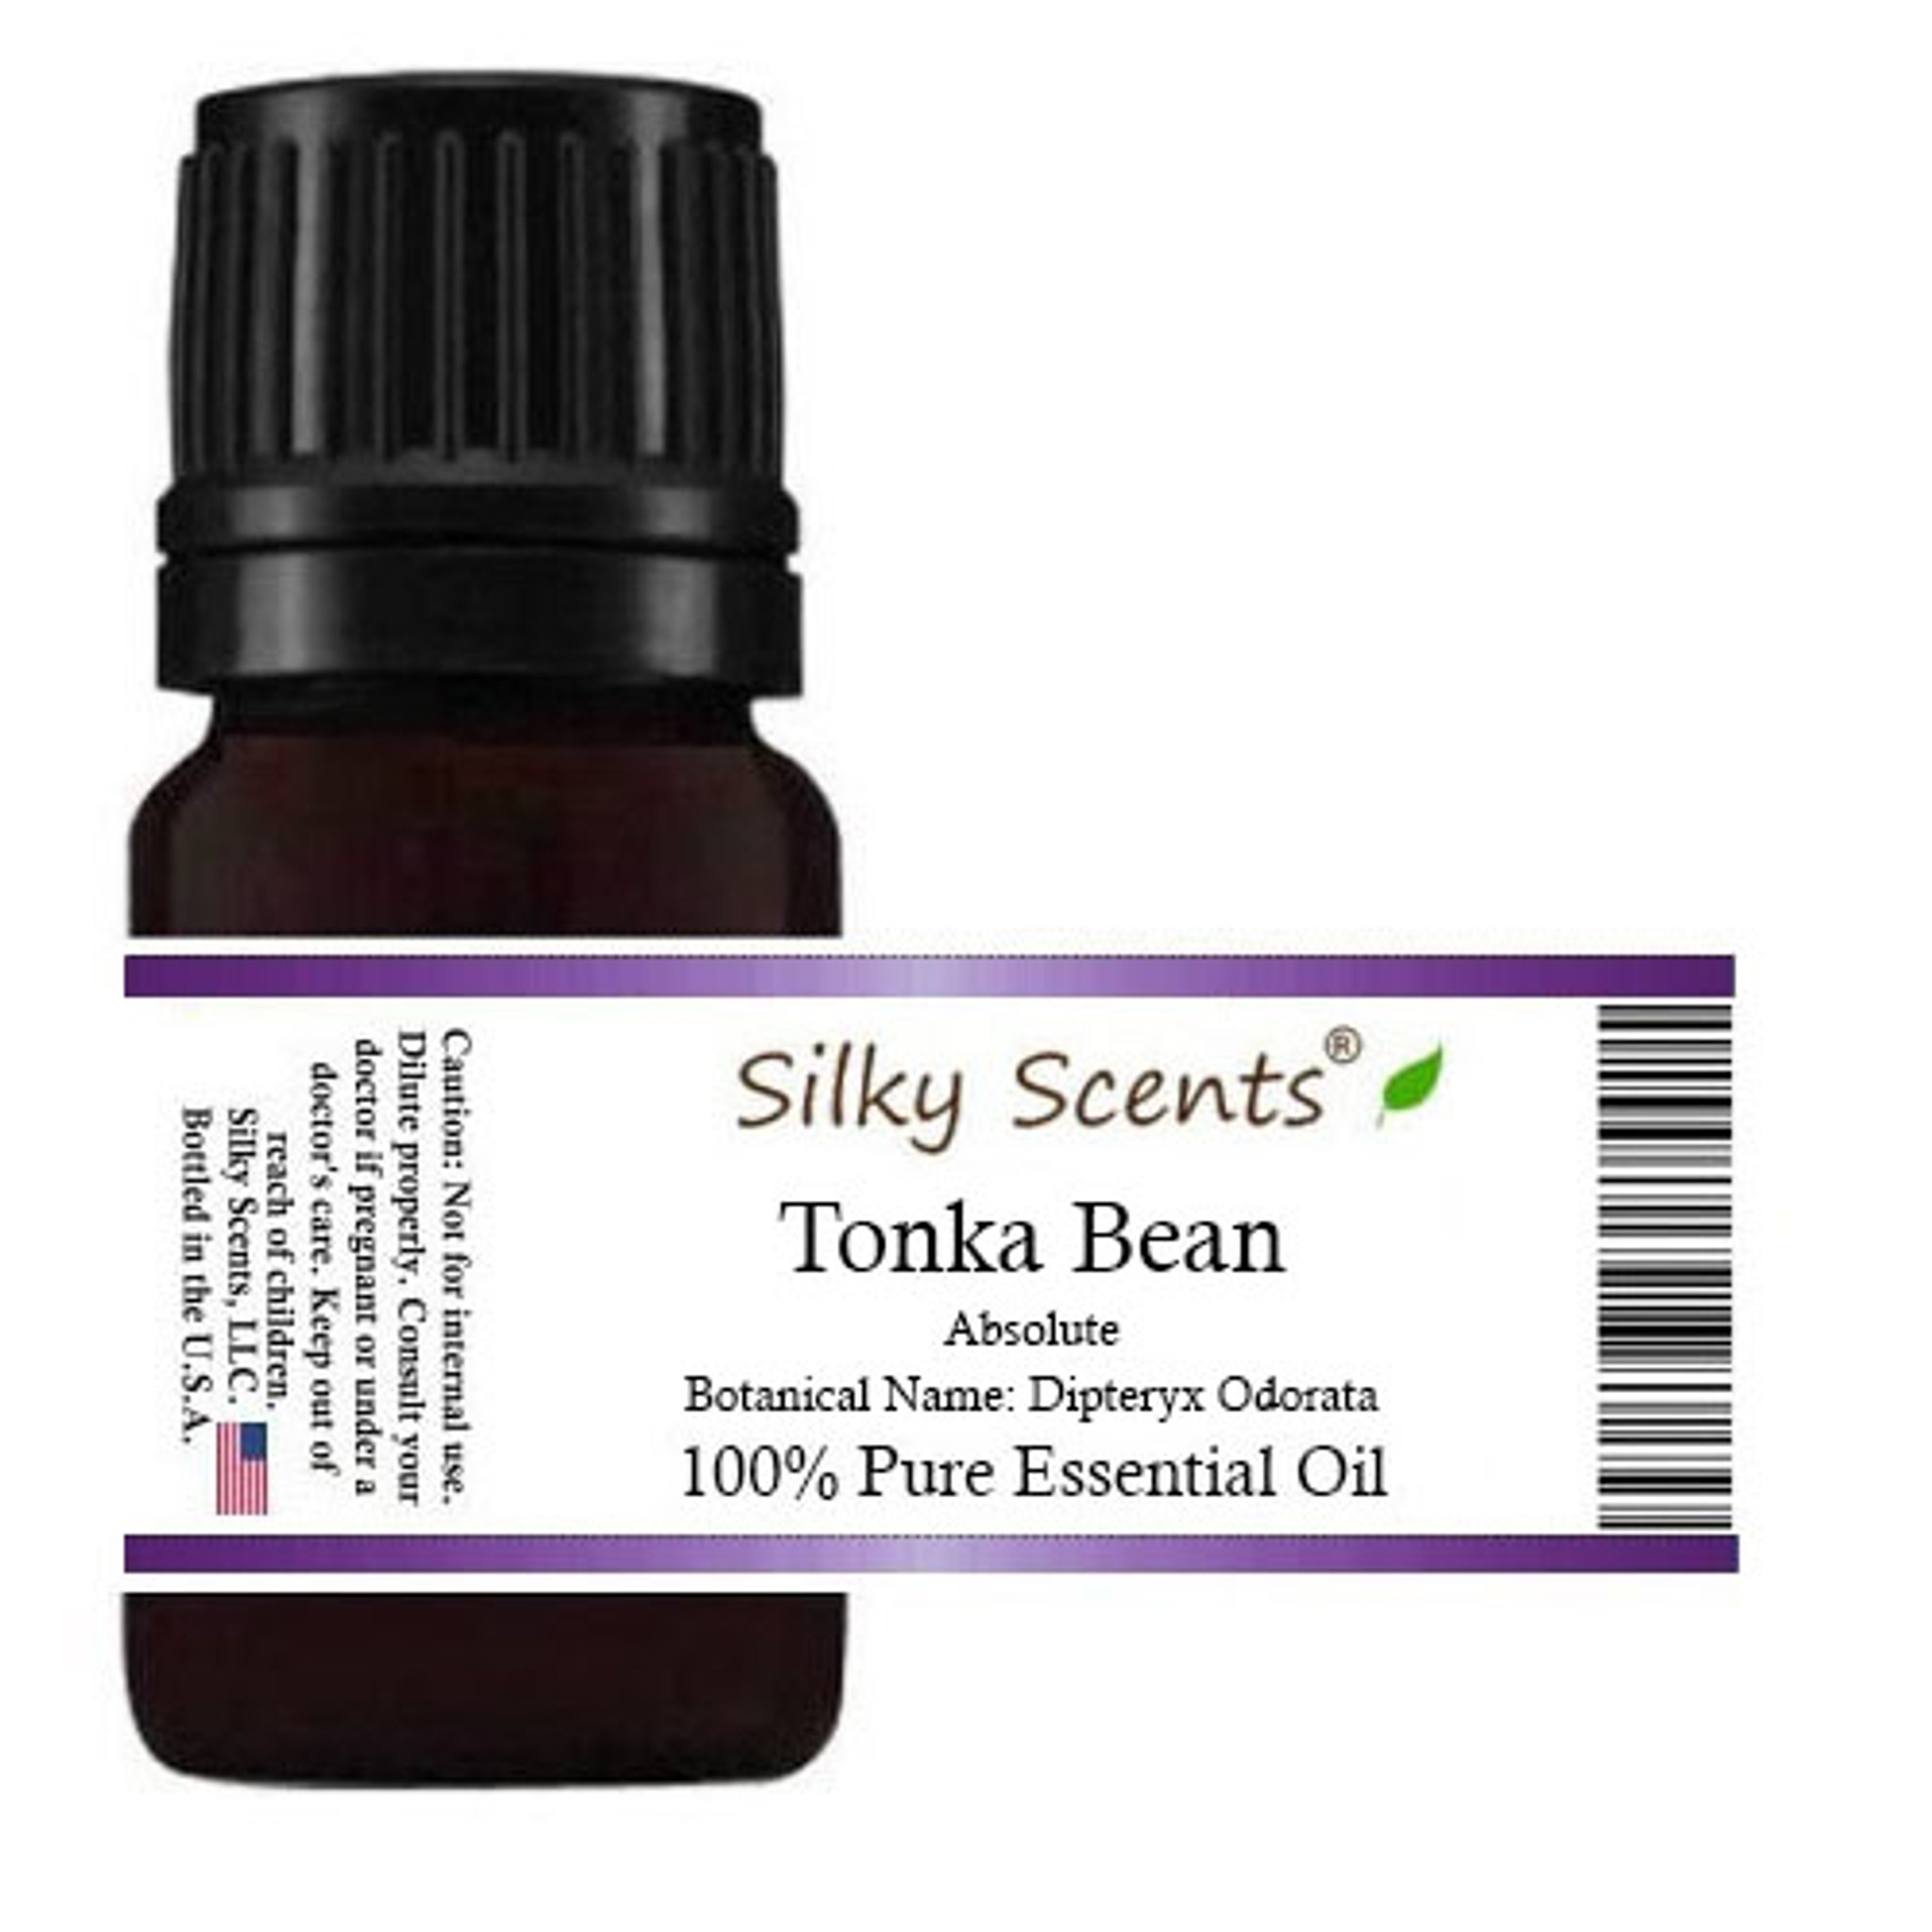 Tonka bean absolute oil –